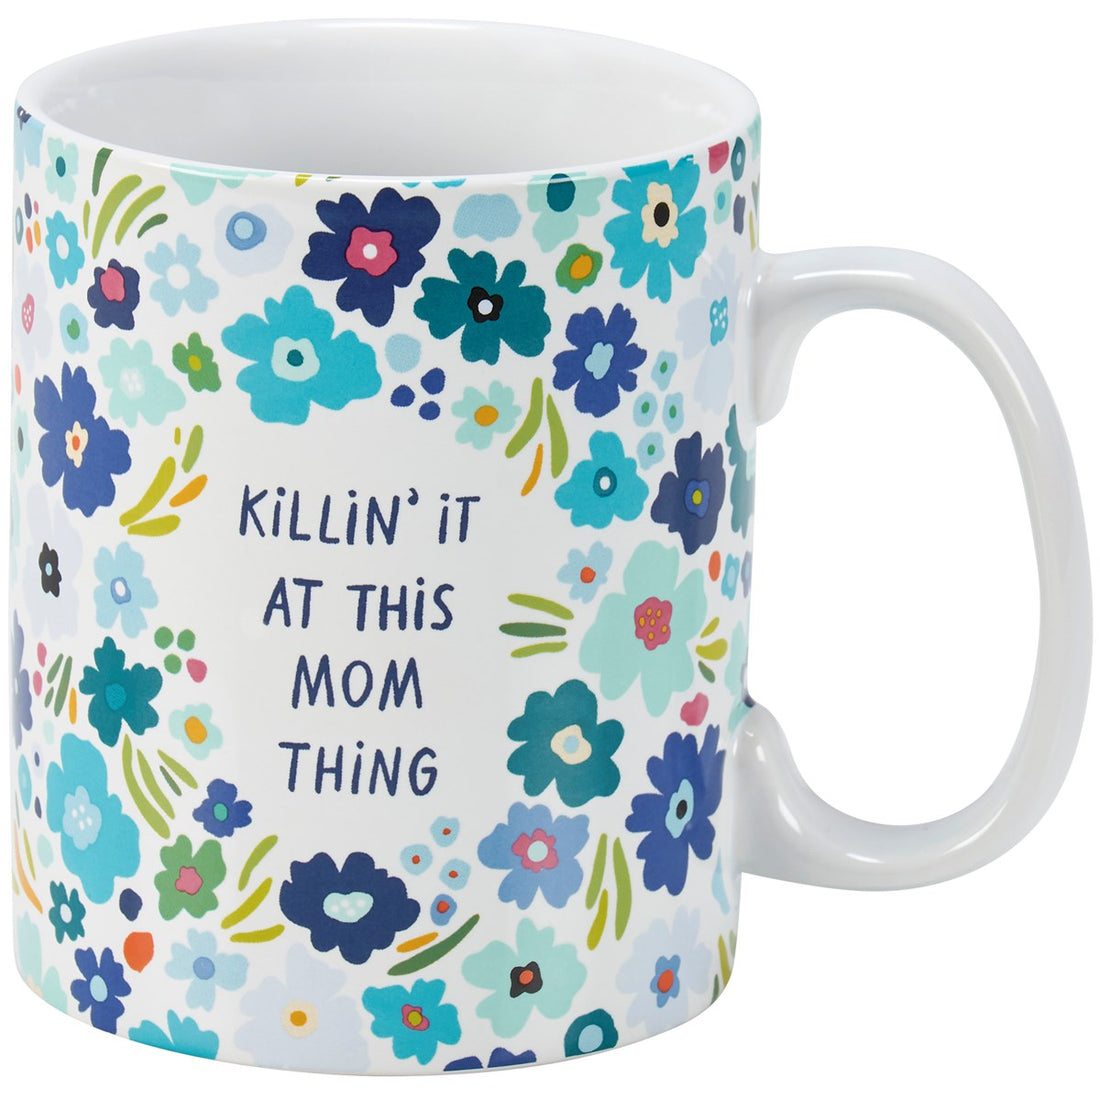 Mom Thing Mug